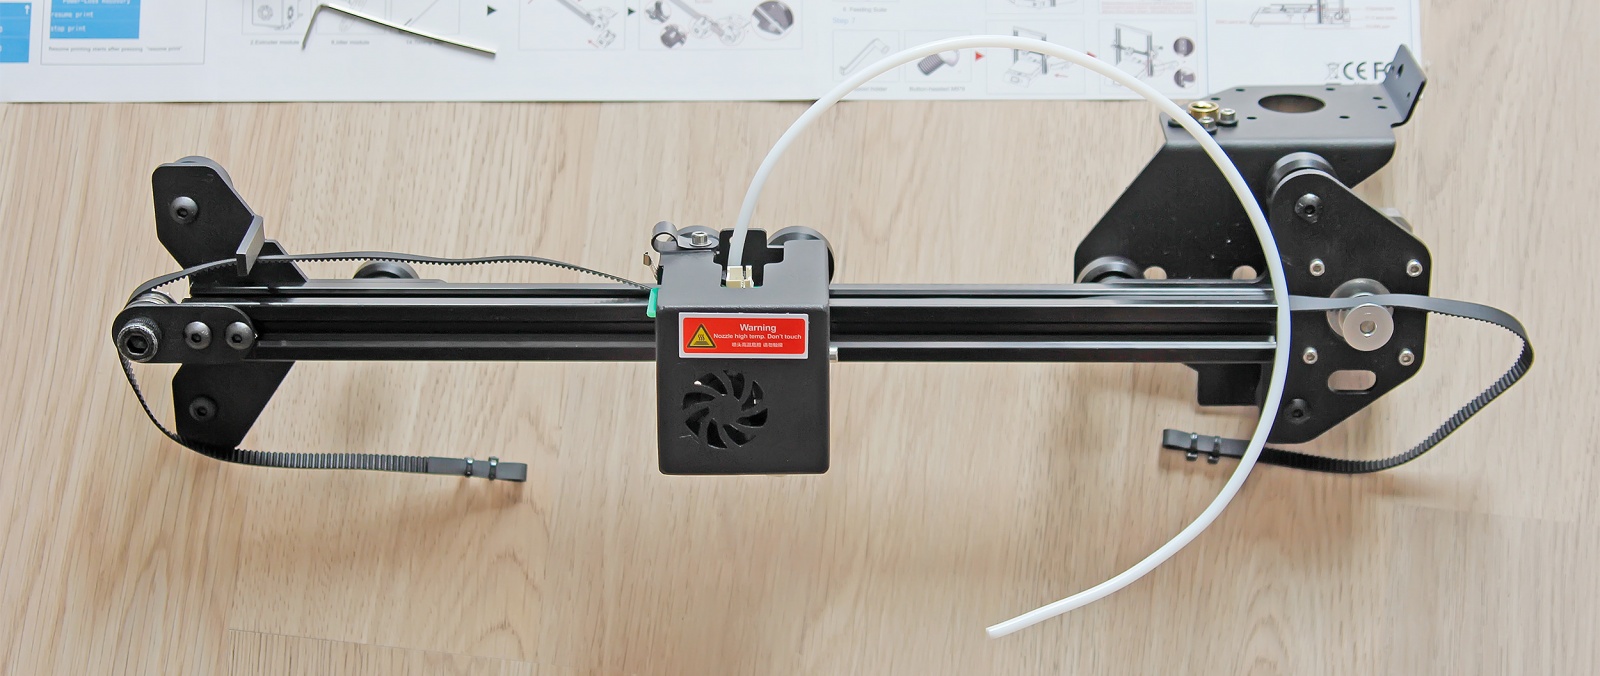 JG Maker — достойная альтернатива недорогим 3D-принтерам для начинающих - 26